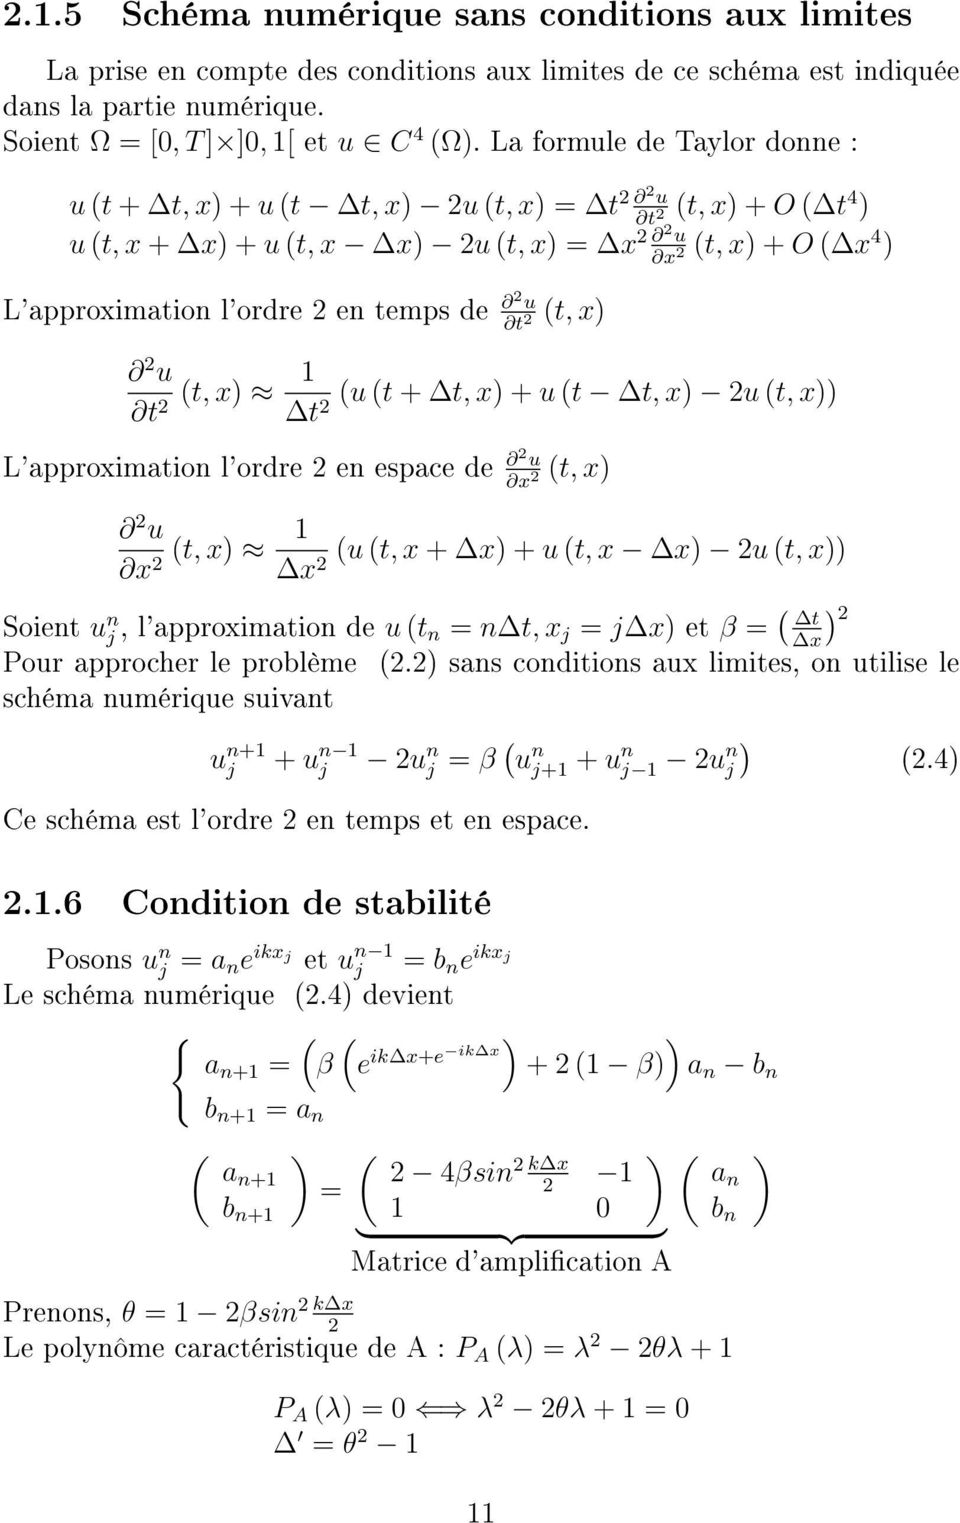 de 2 u 2 (t, x) 2 u 1 (t, x) (u (t + t, x) + u (t t, x) 2u (t, x)) 2 t2 L'approximation l'ordre 2 en espace de 2 u x 2 (t, x) 2 u 1 (t, x) (u (t, x + x) + u (t, x x) 2u (t, x)) x2 x2 Soient u n j,